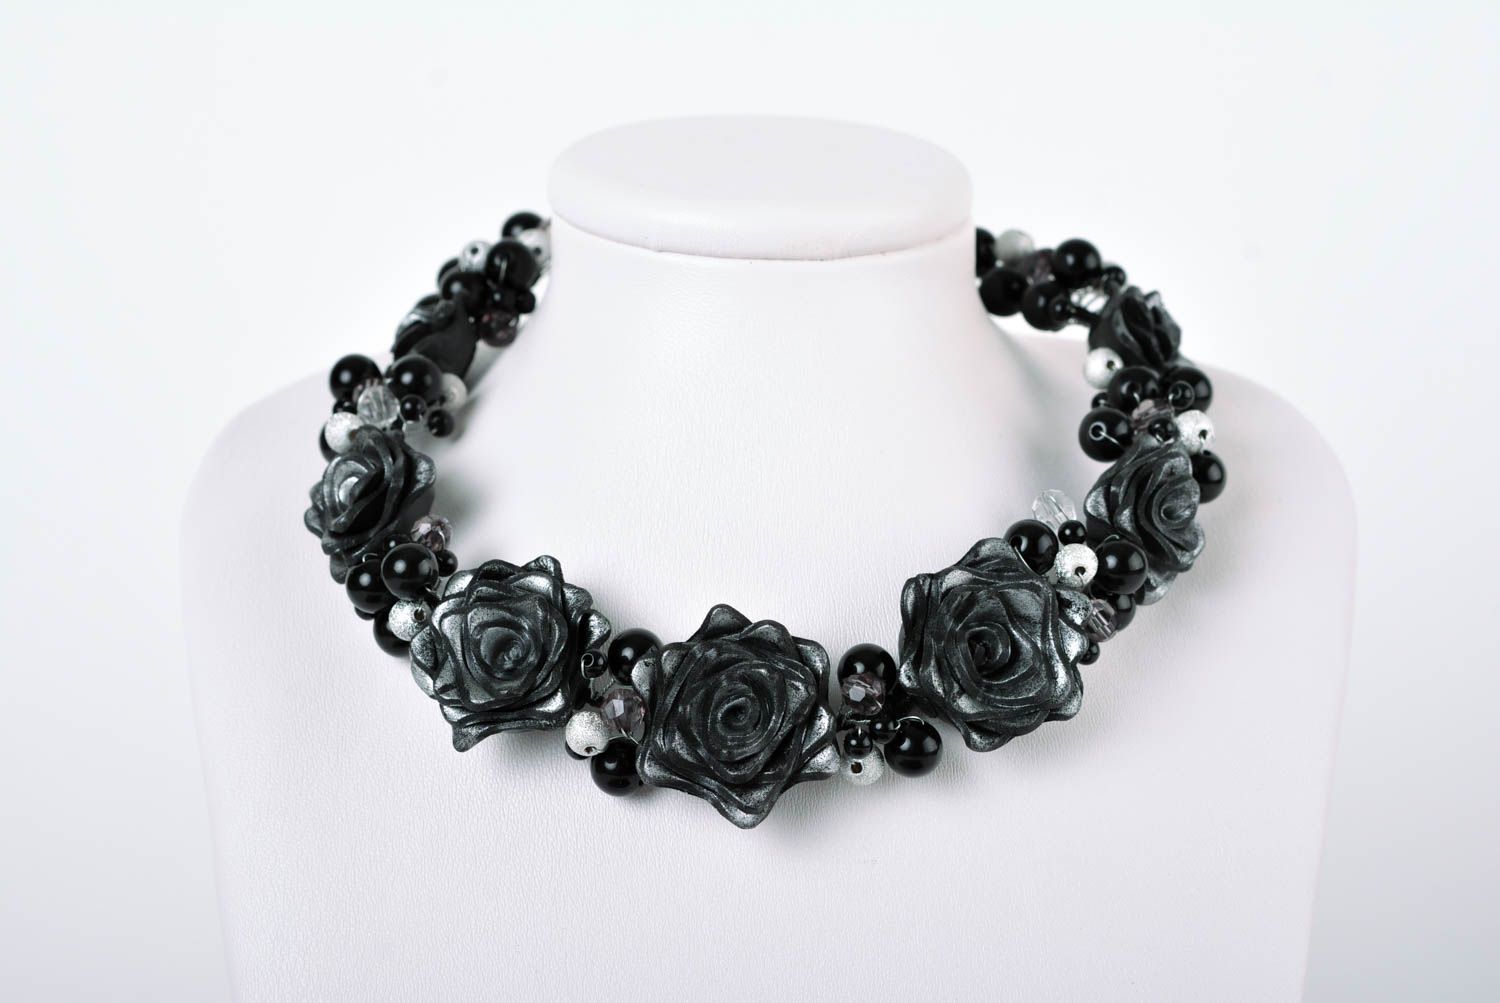  Модные серьги комплект украшений ручной работы украшение на шею с розами фото 3